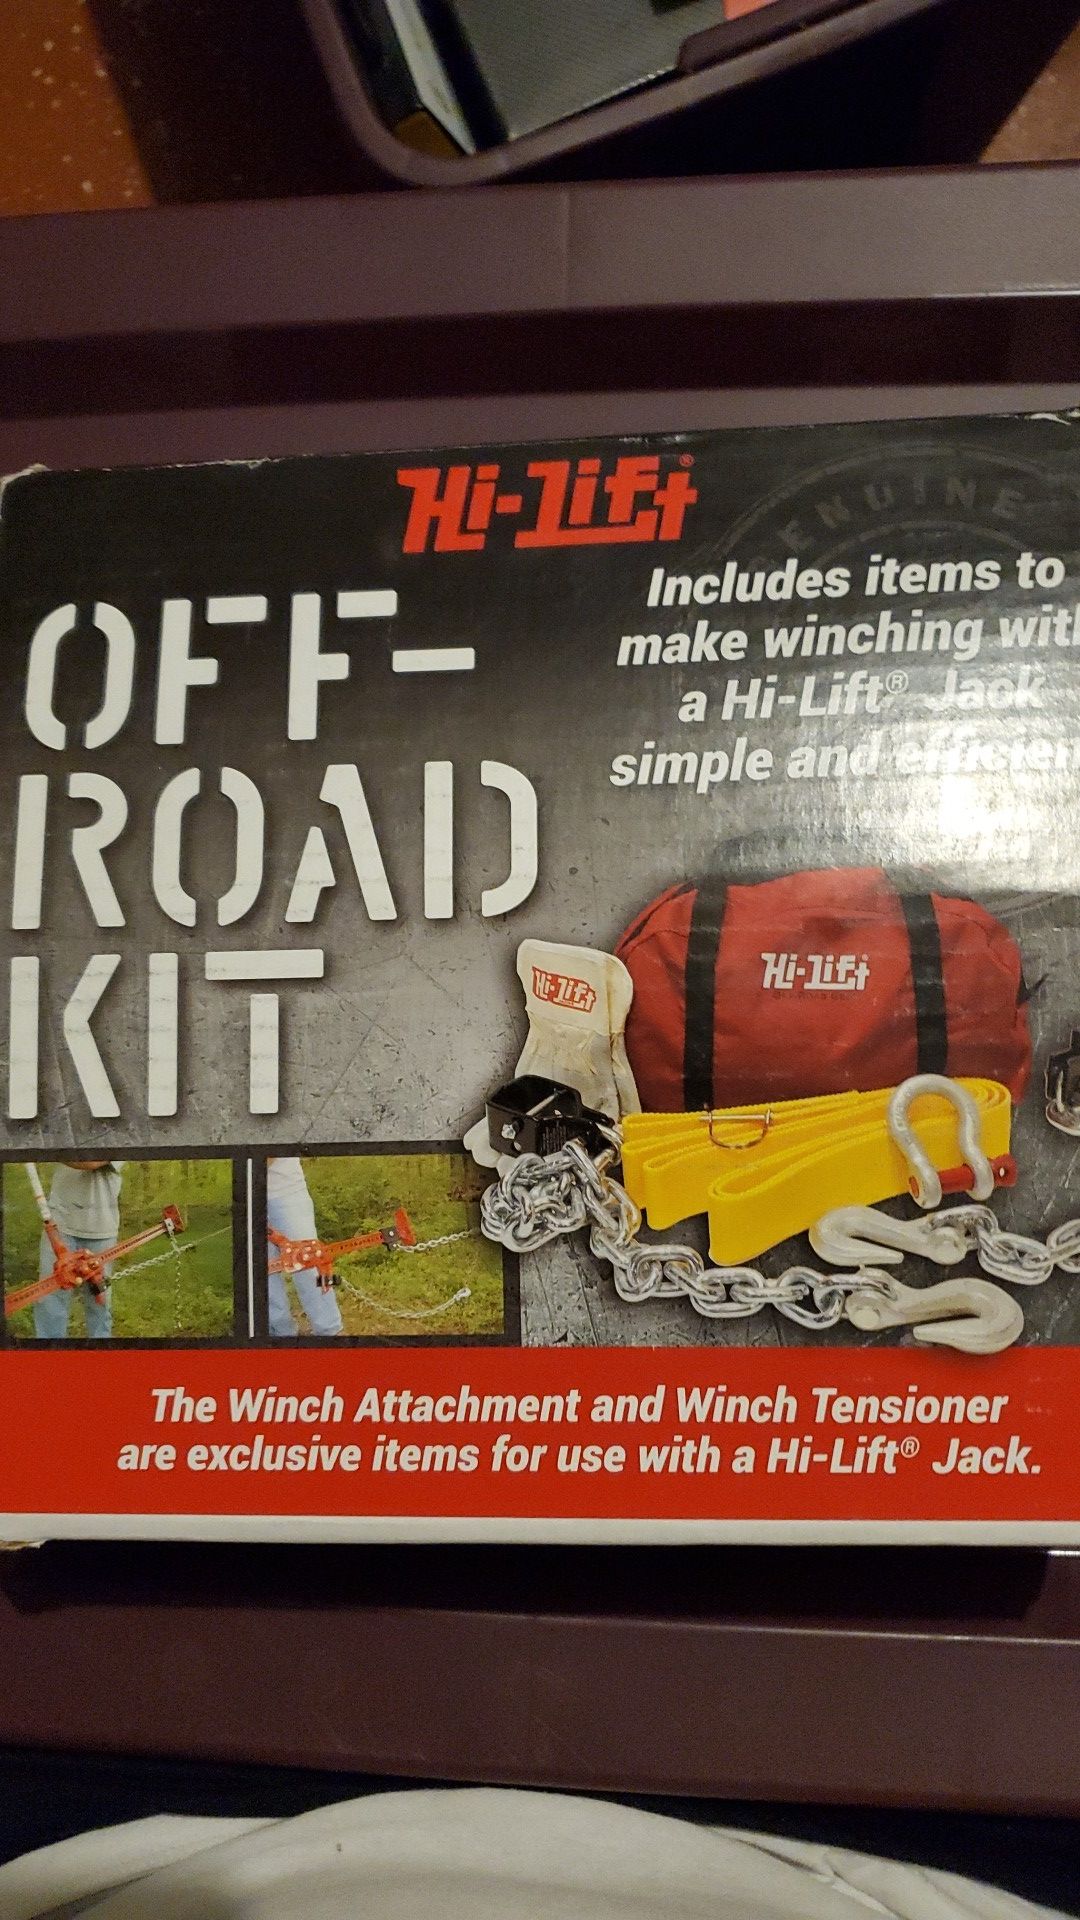 Hi-Lift off road kit